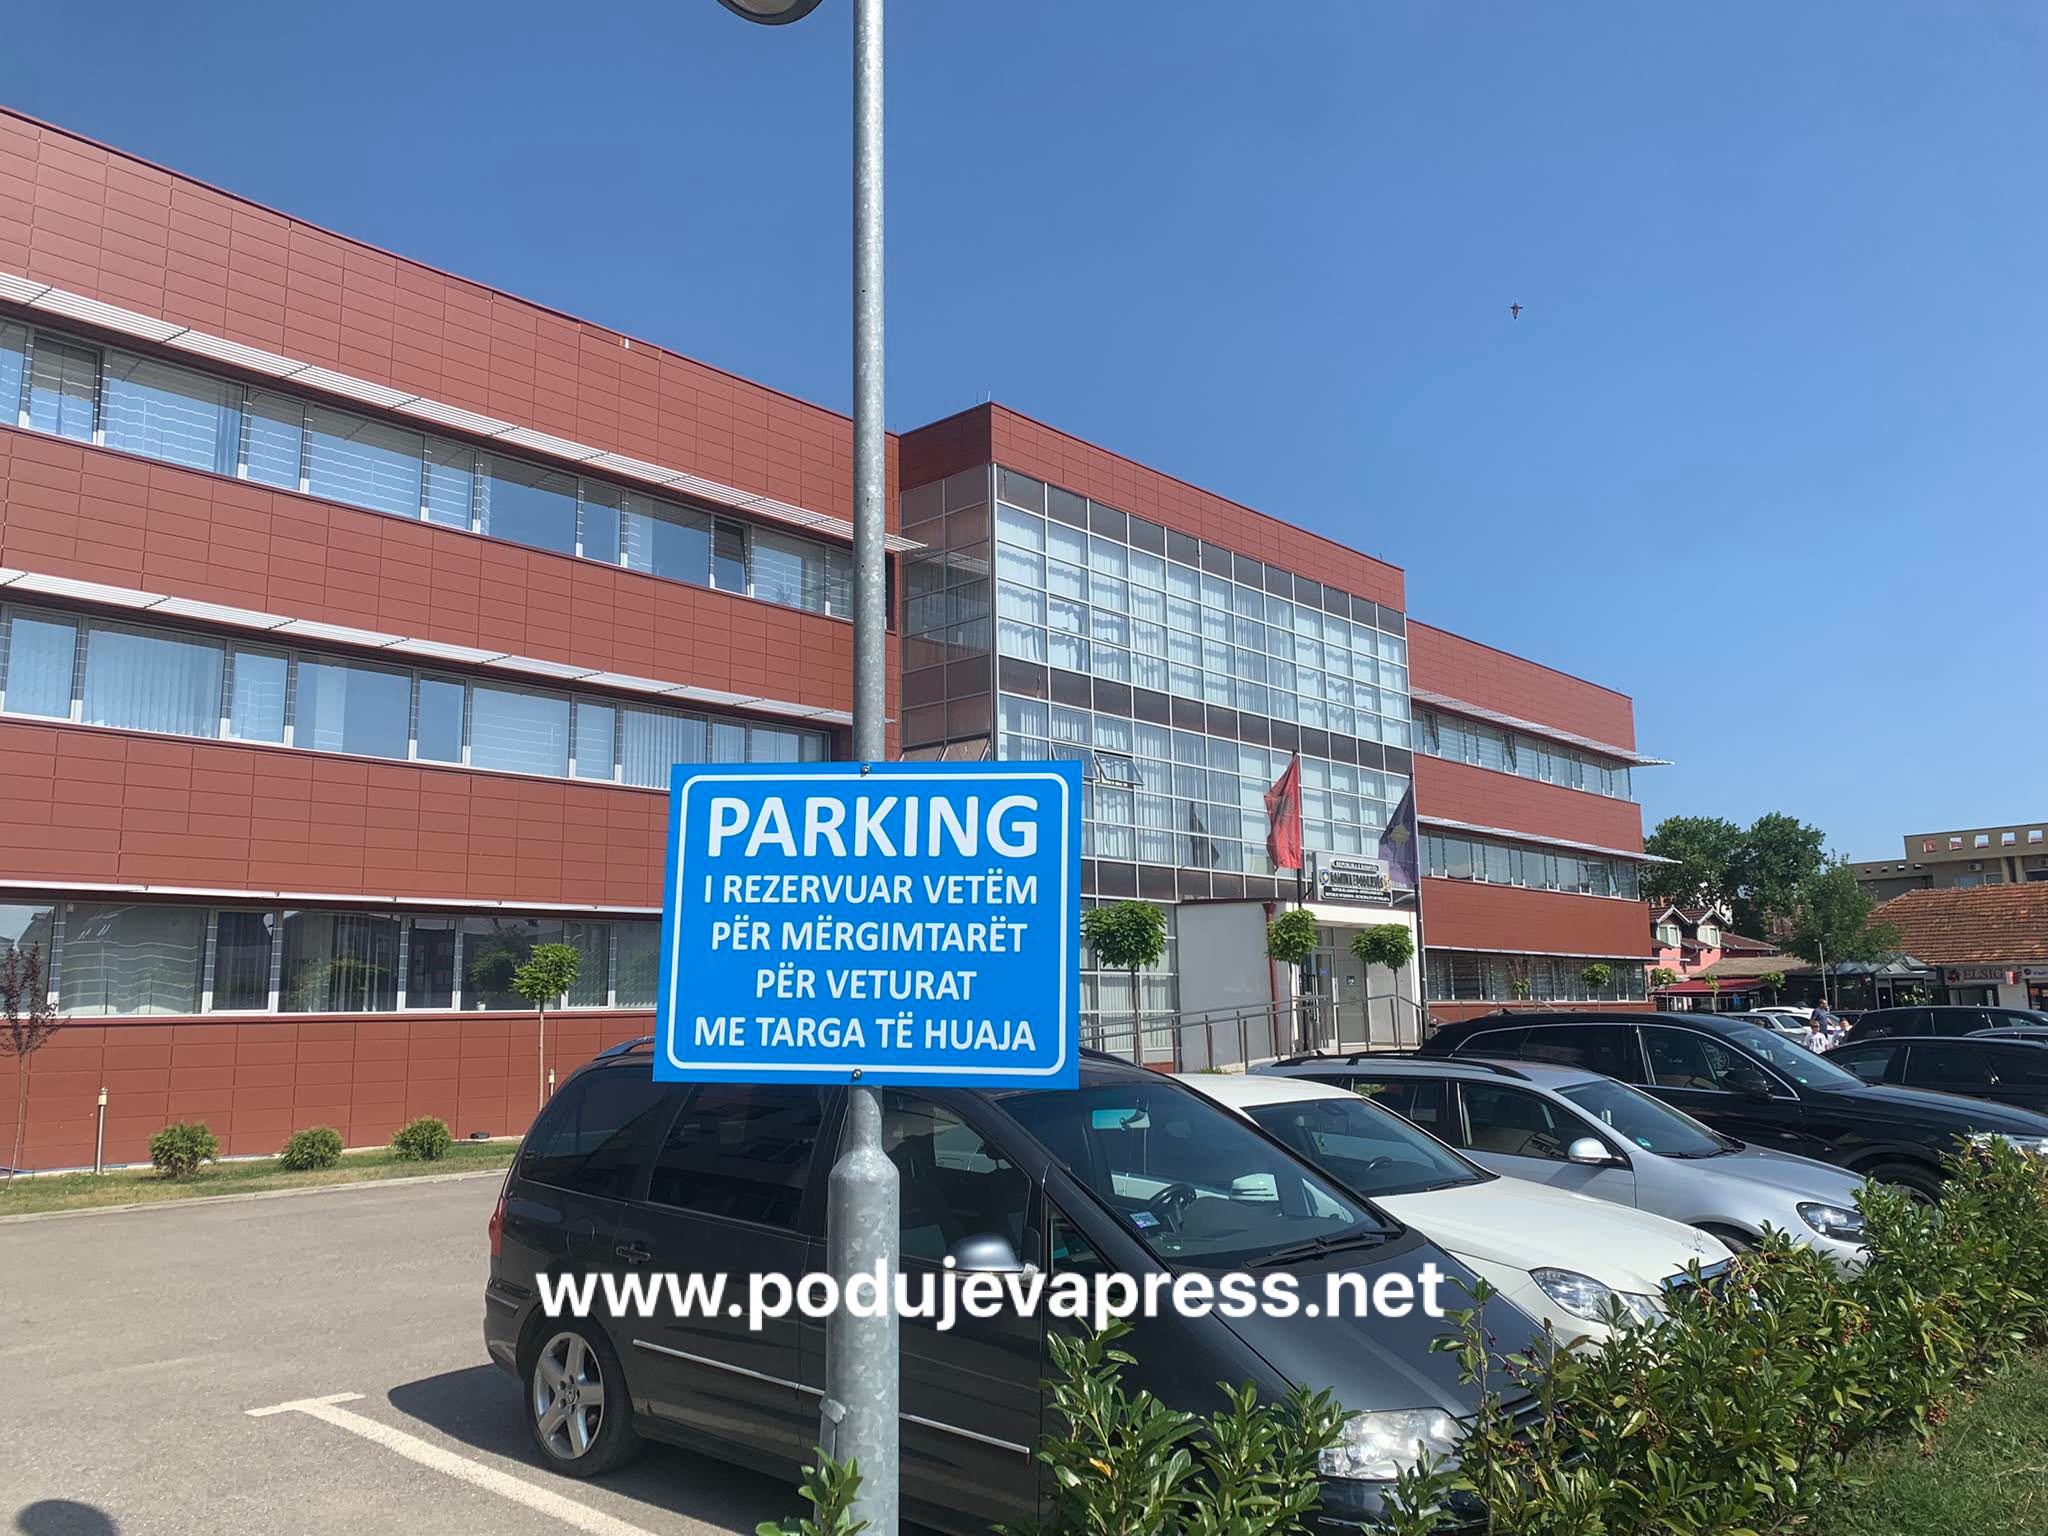  Vendimi i Komunës së Podujevës – lëshimet juridike për parkingun pa pagesë